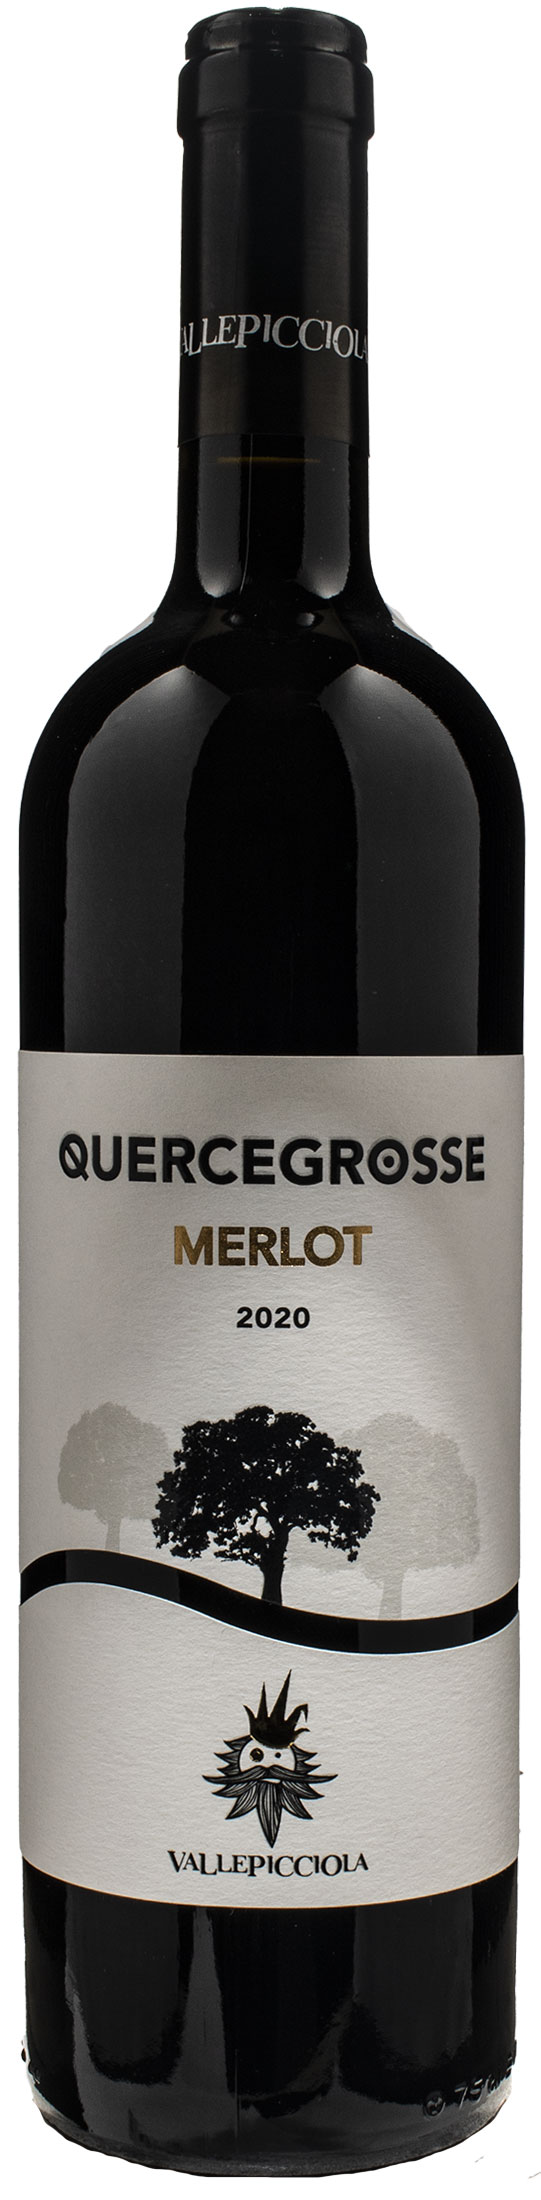 Vallepicciola Quercegrosse Merlot 2020